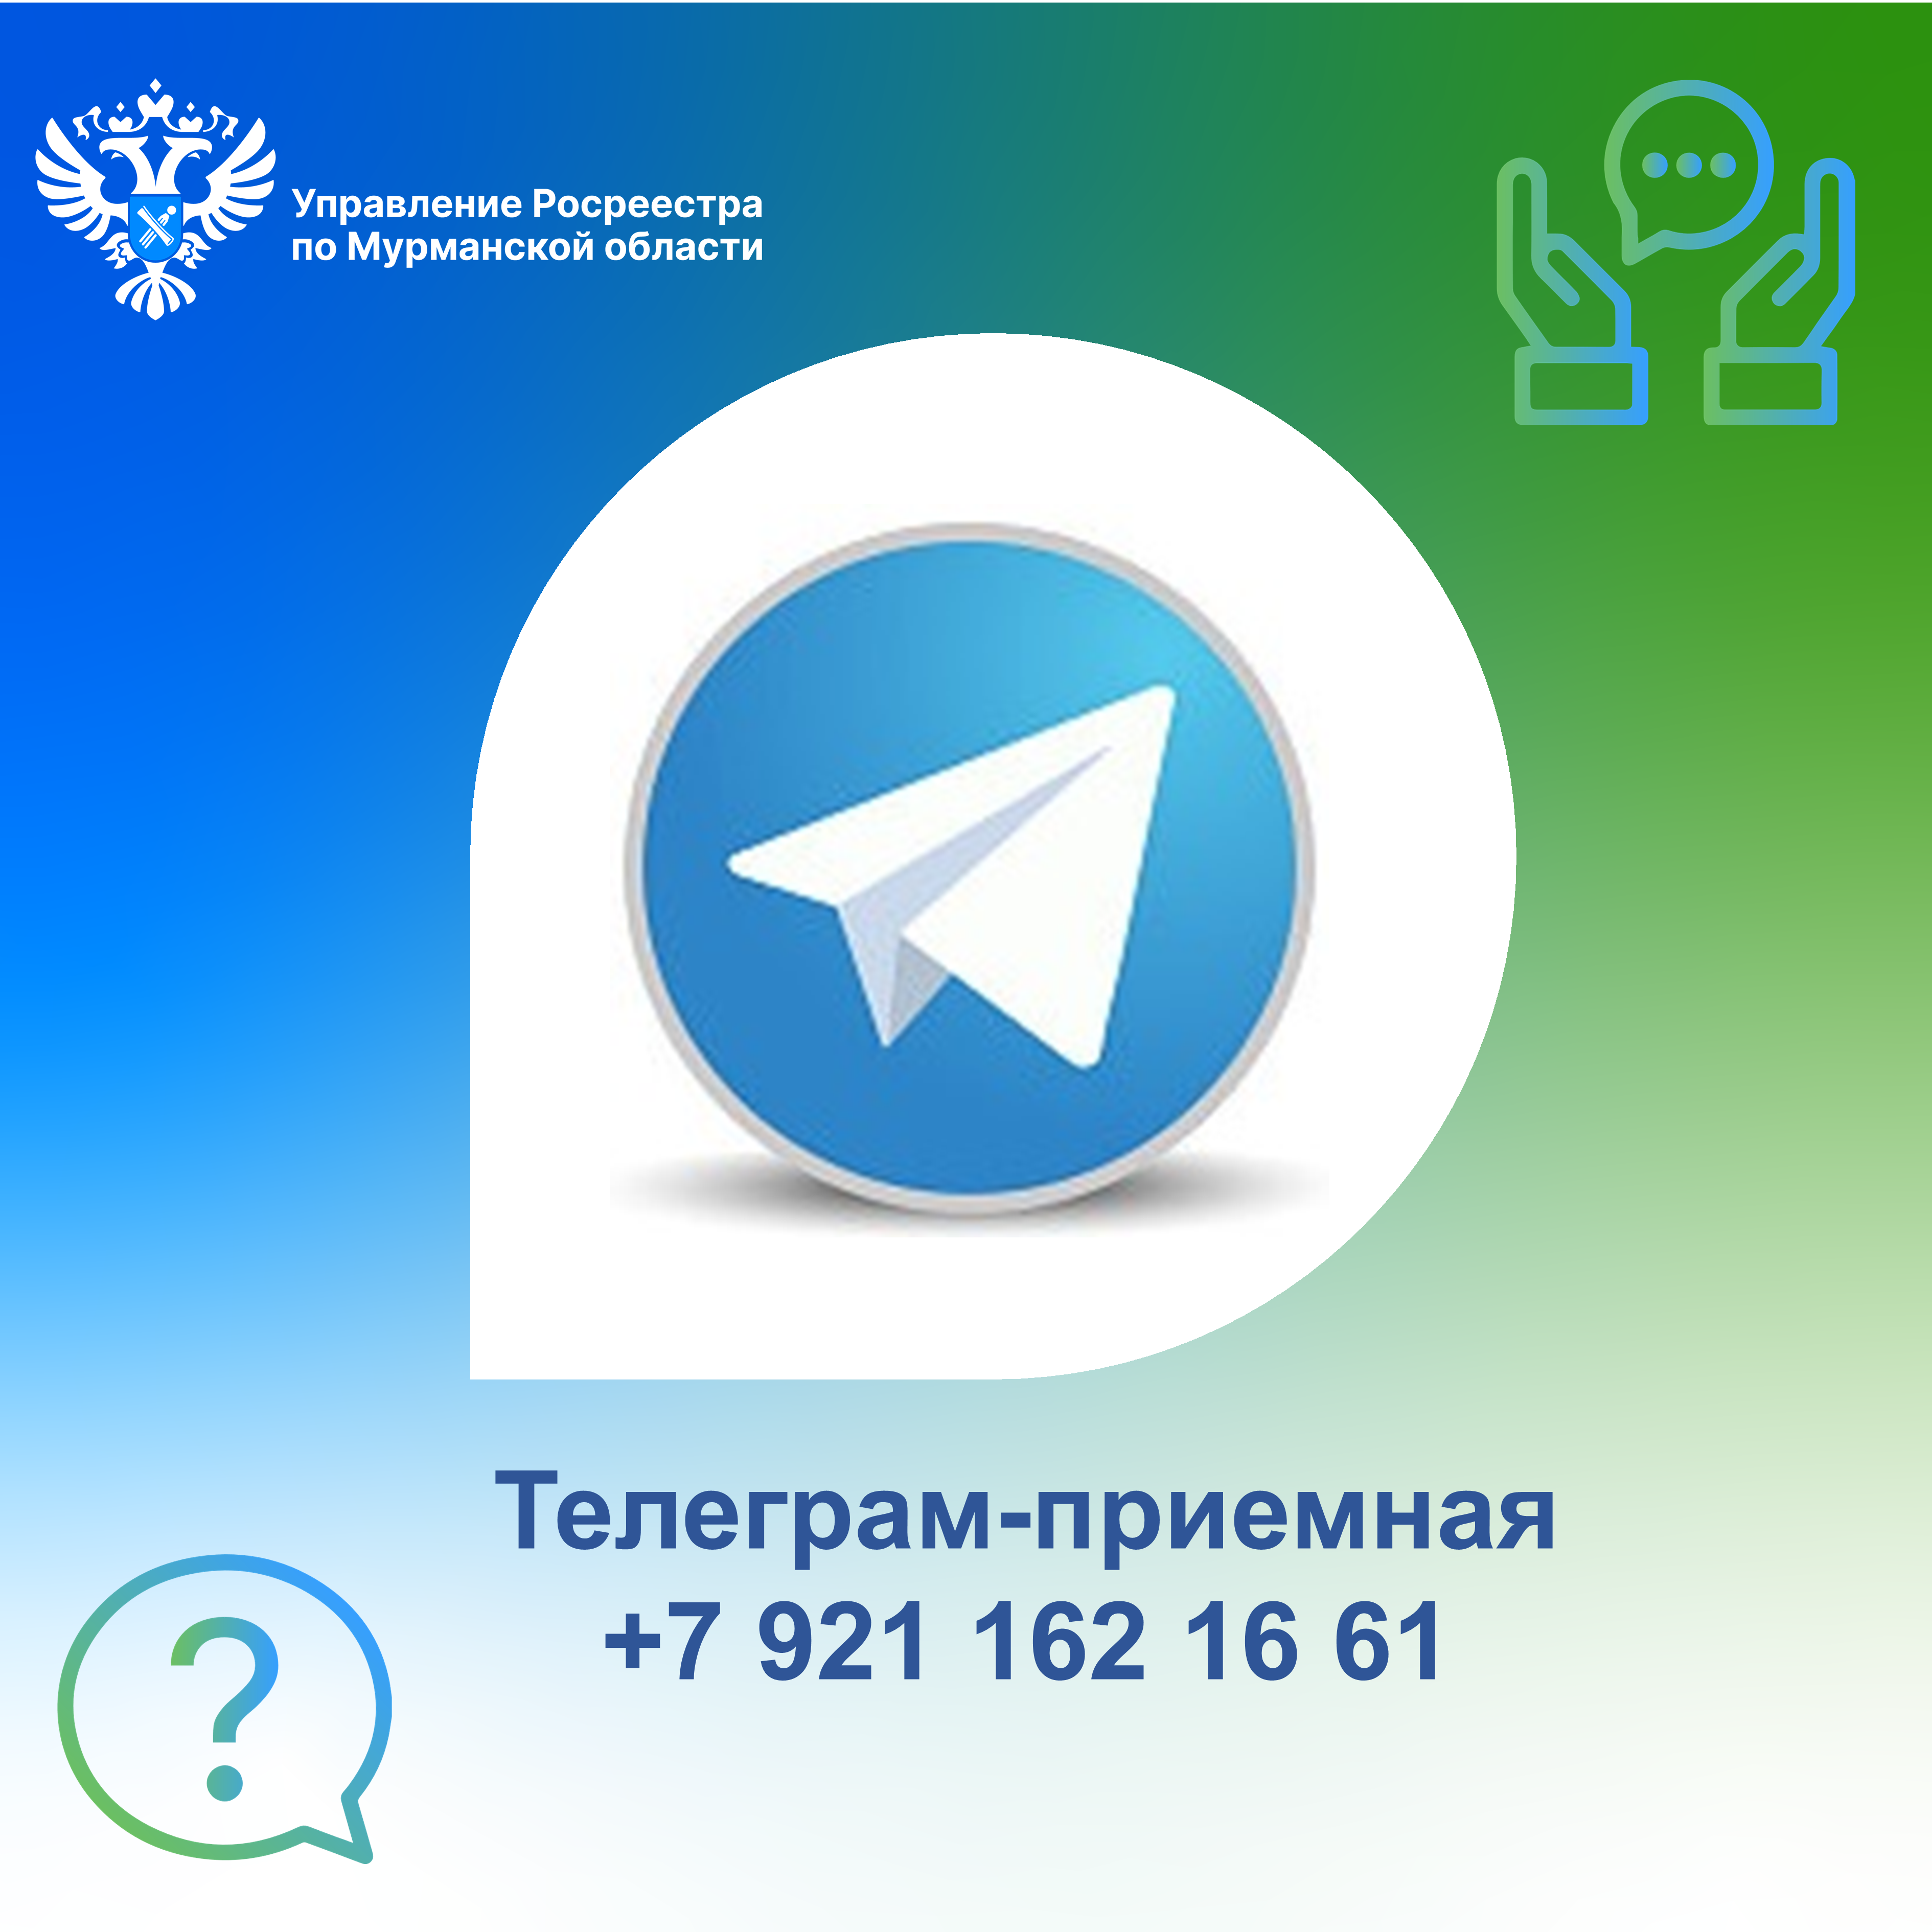 Открыть телеграмм на компьютере онлайн на русском фото 52